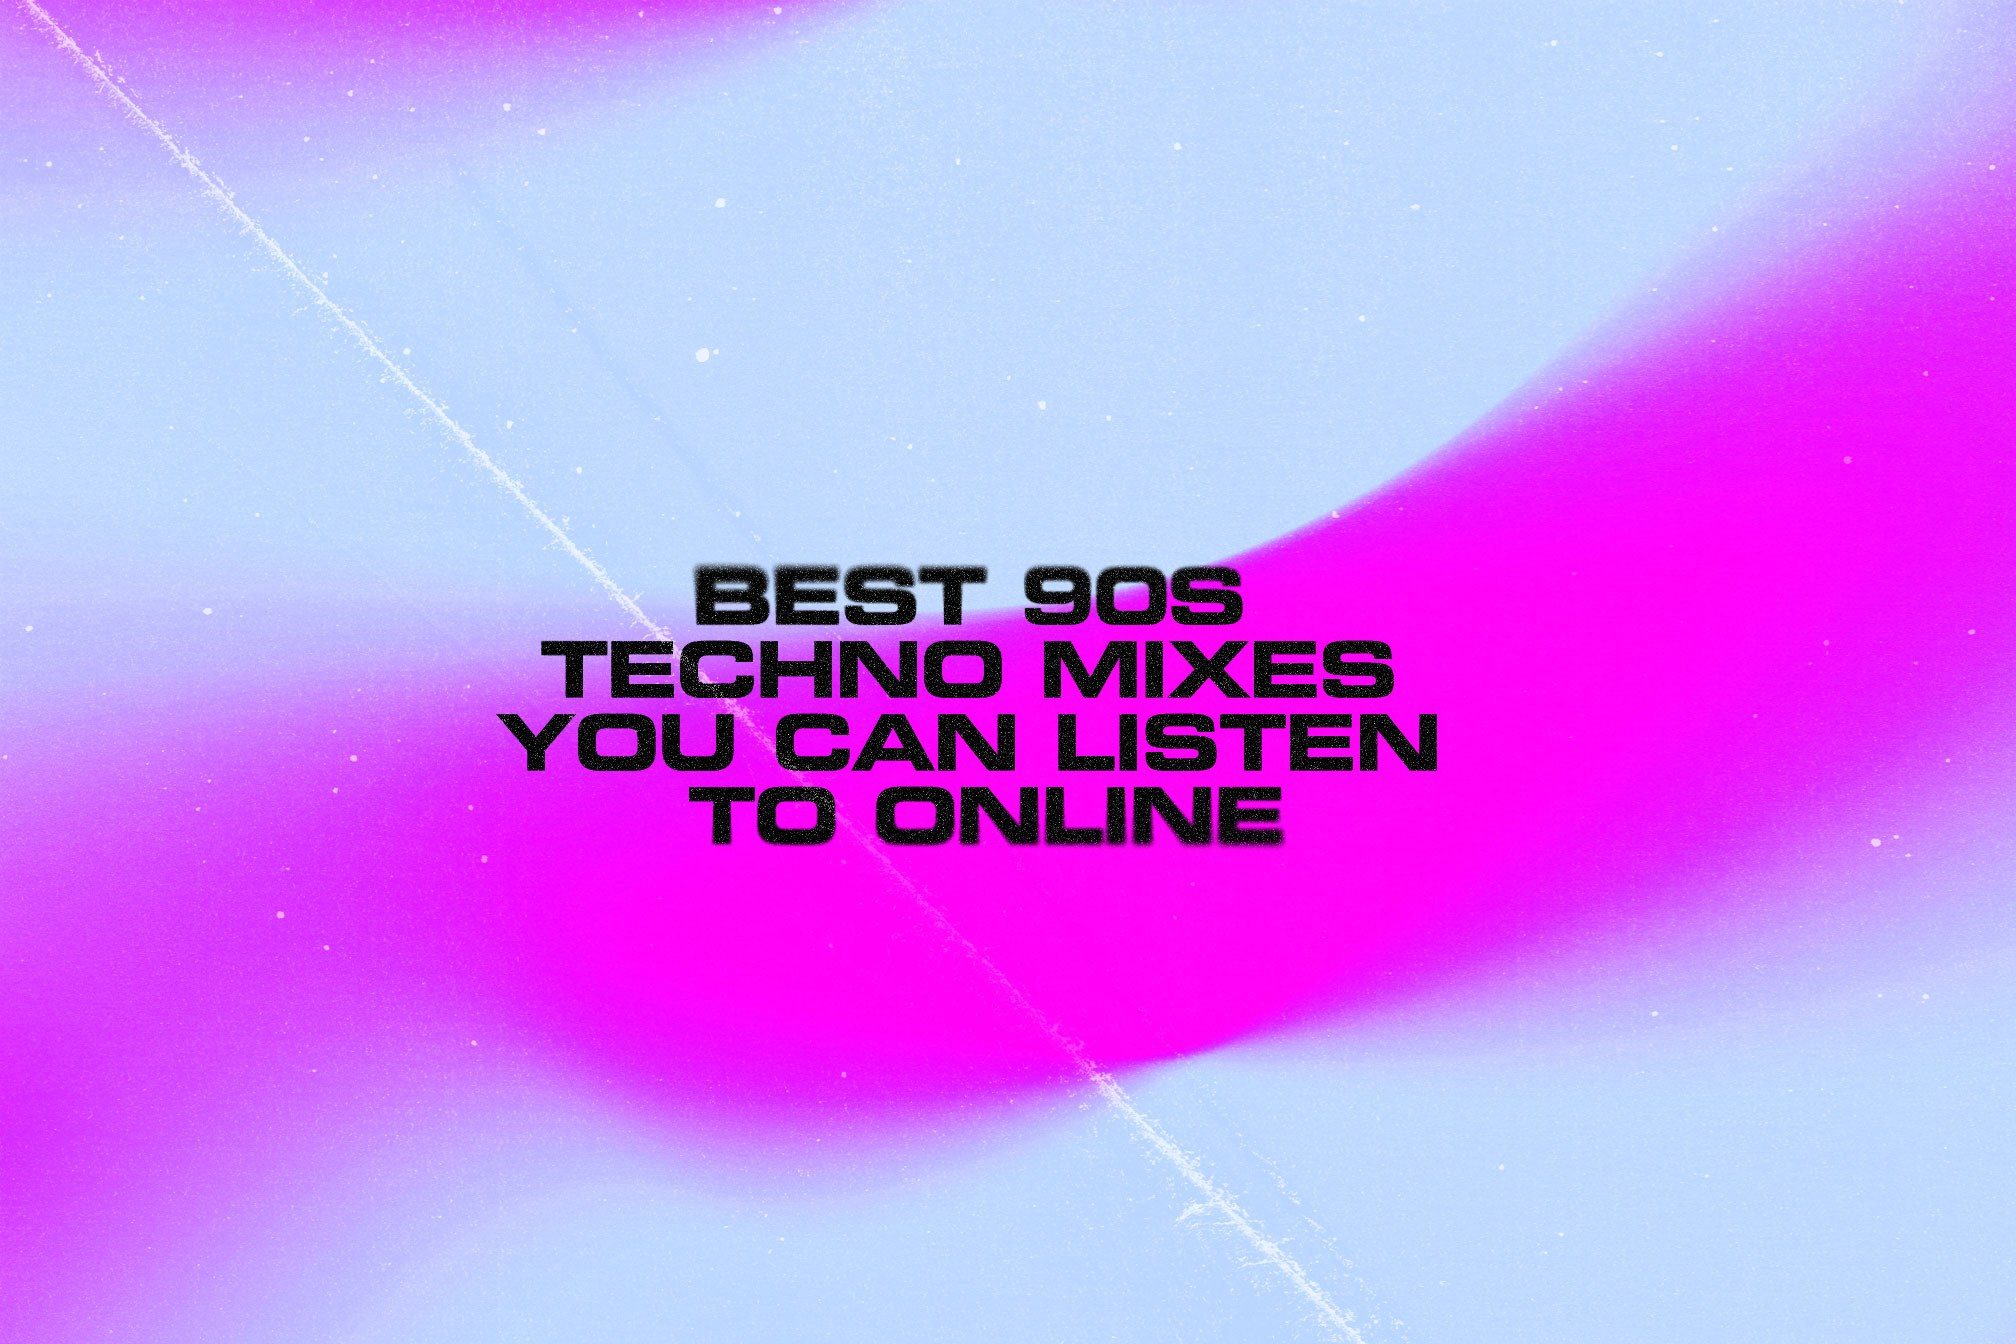 1990s techno mixes